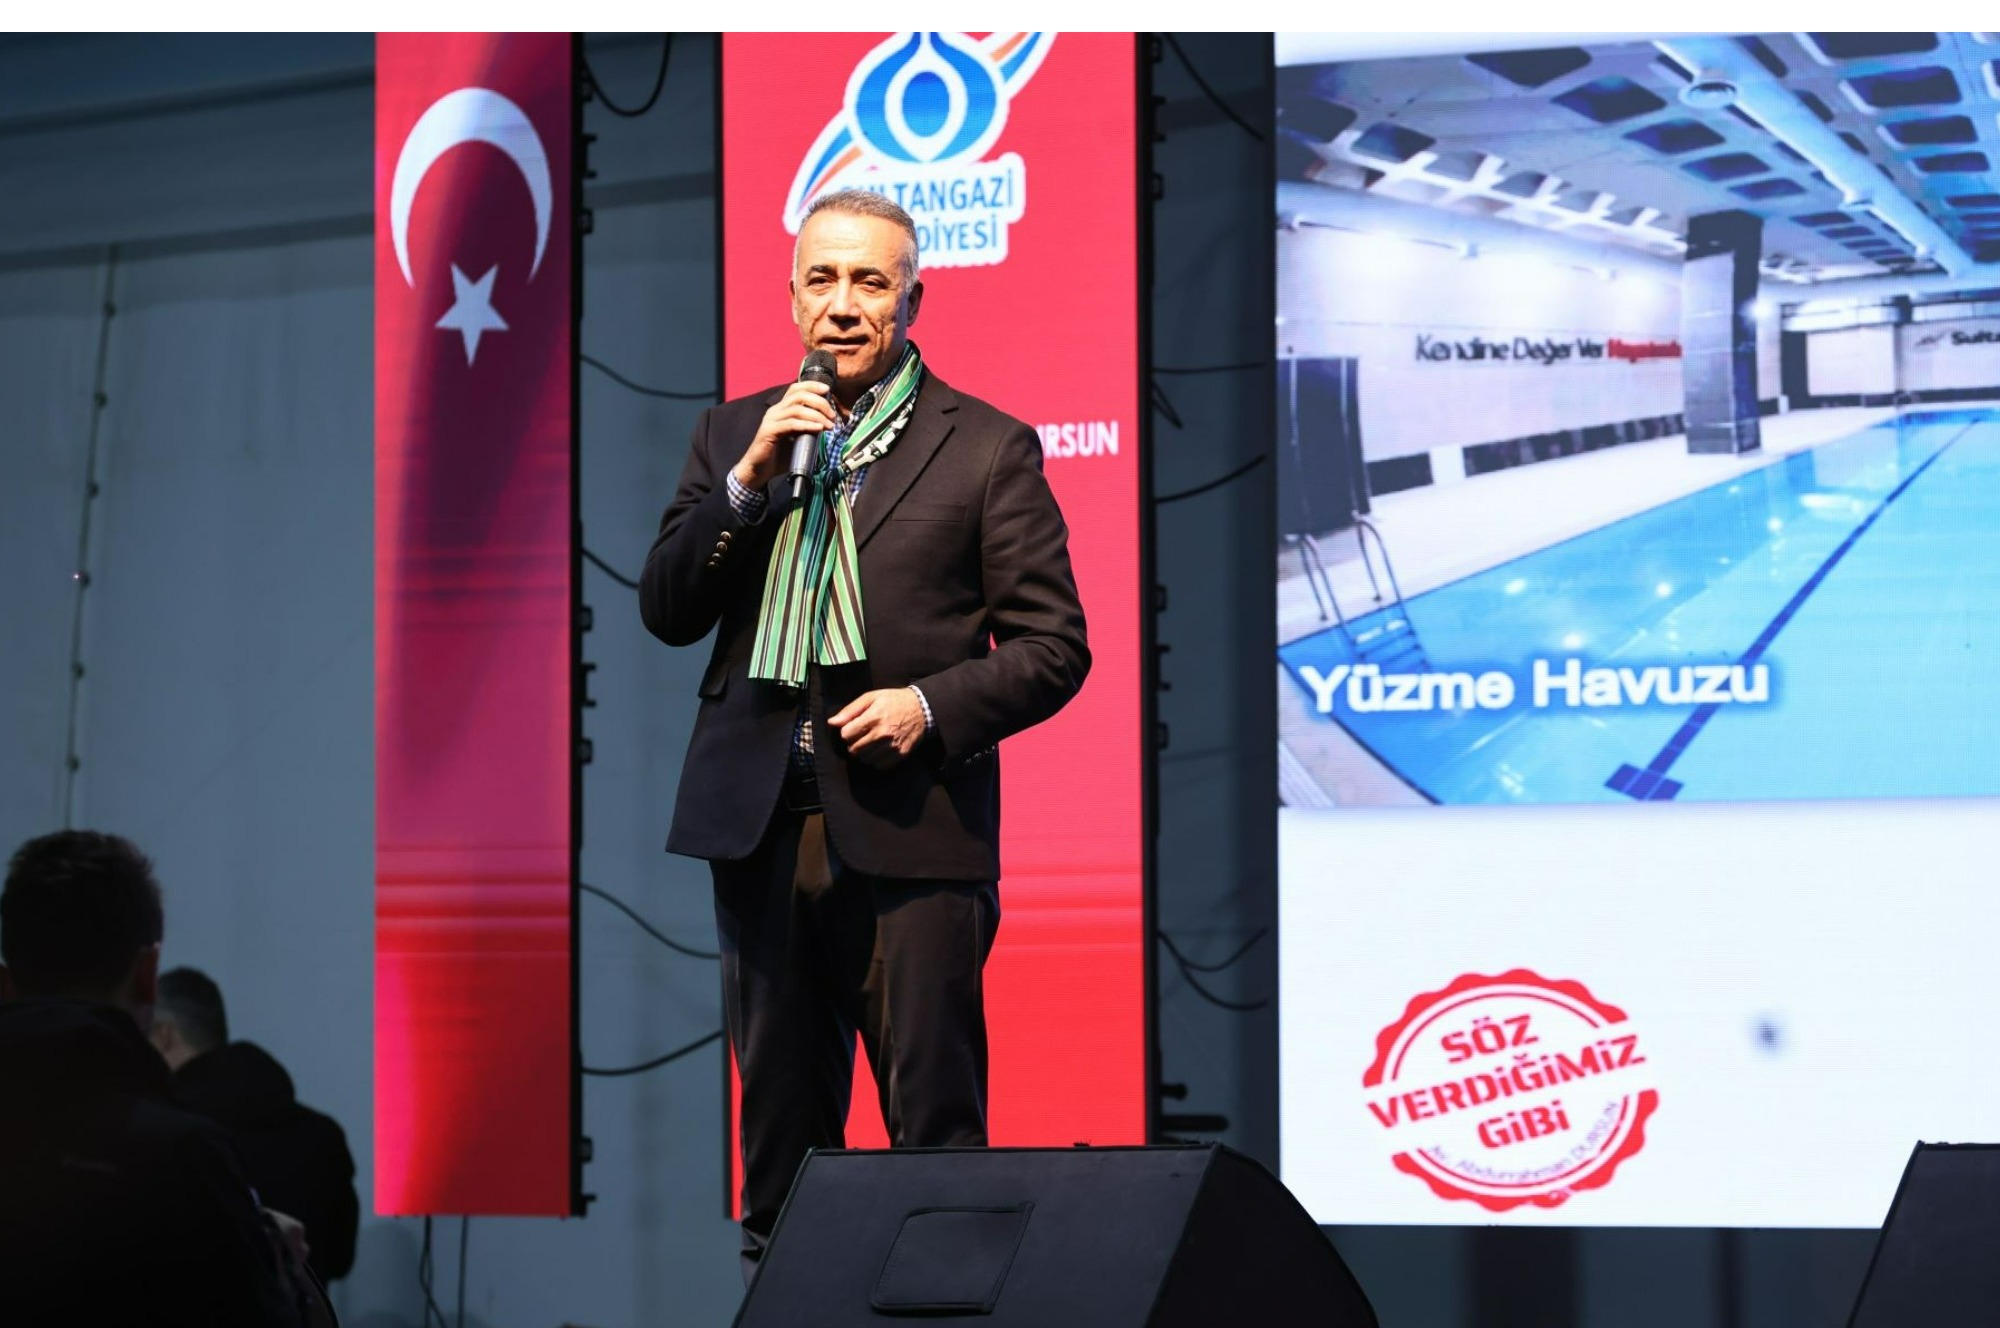 Sultangazi Belediyesi’nin düzenlediği Anadolu Kültür Festivali kapsamında Geleneksel Giresun Sırgan Festivali gerçekleşti.